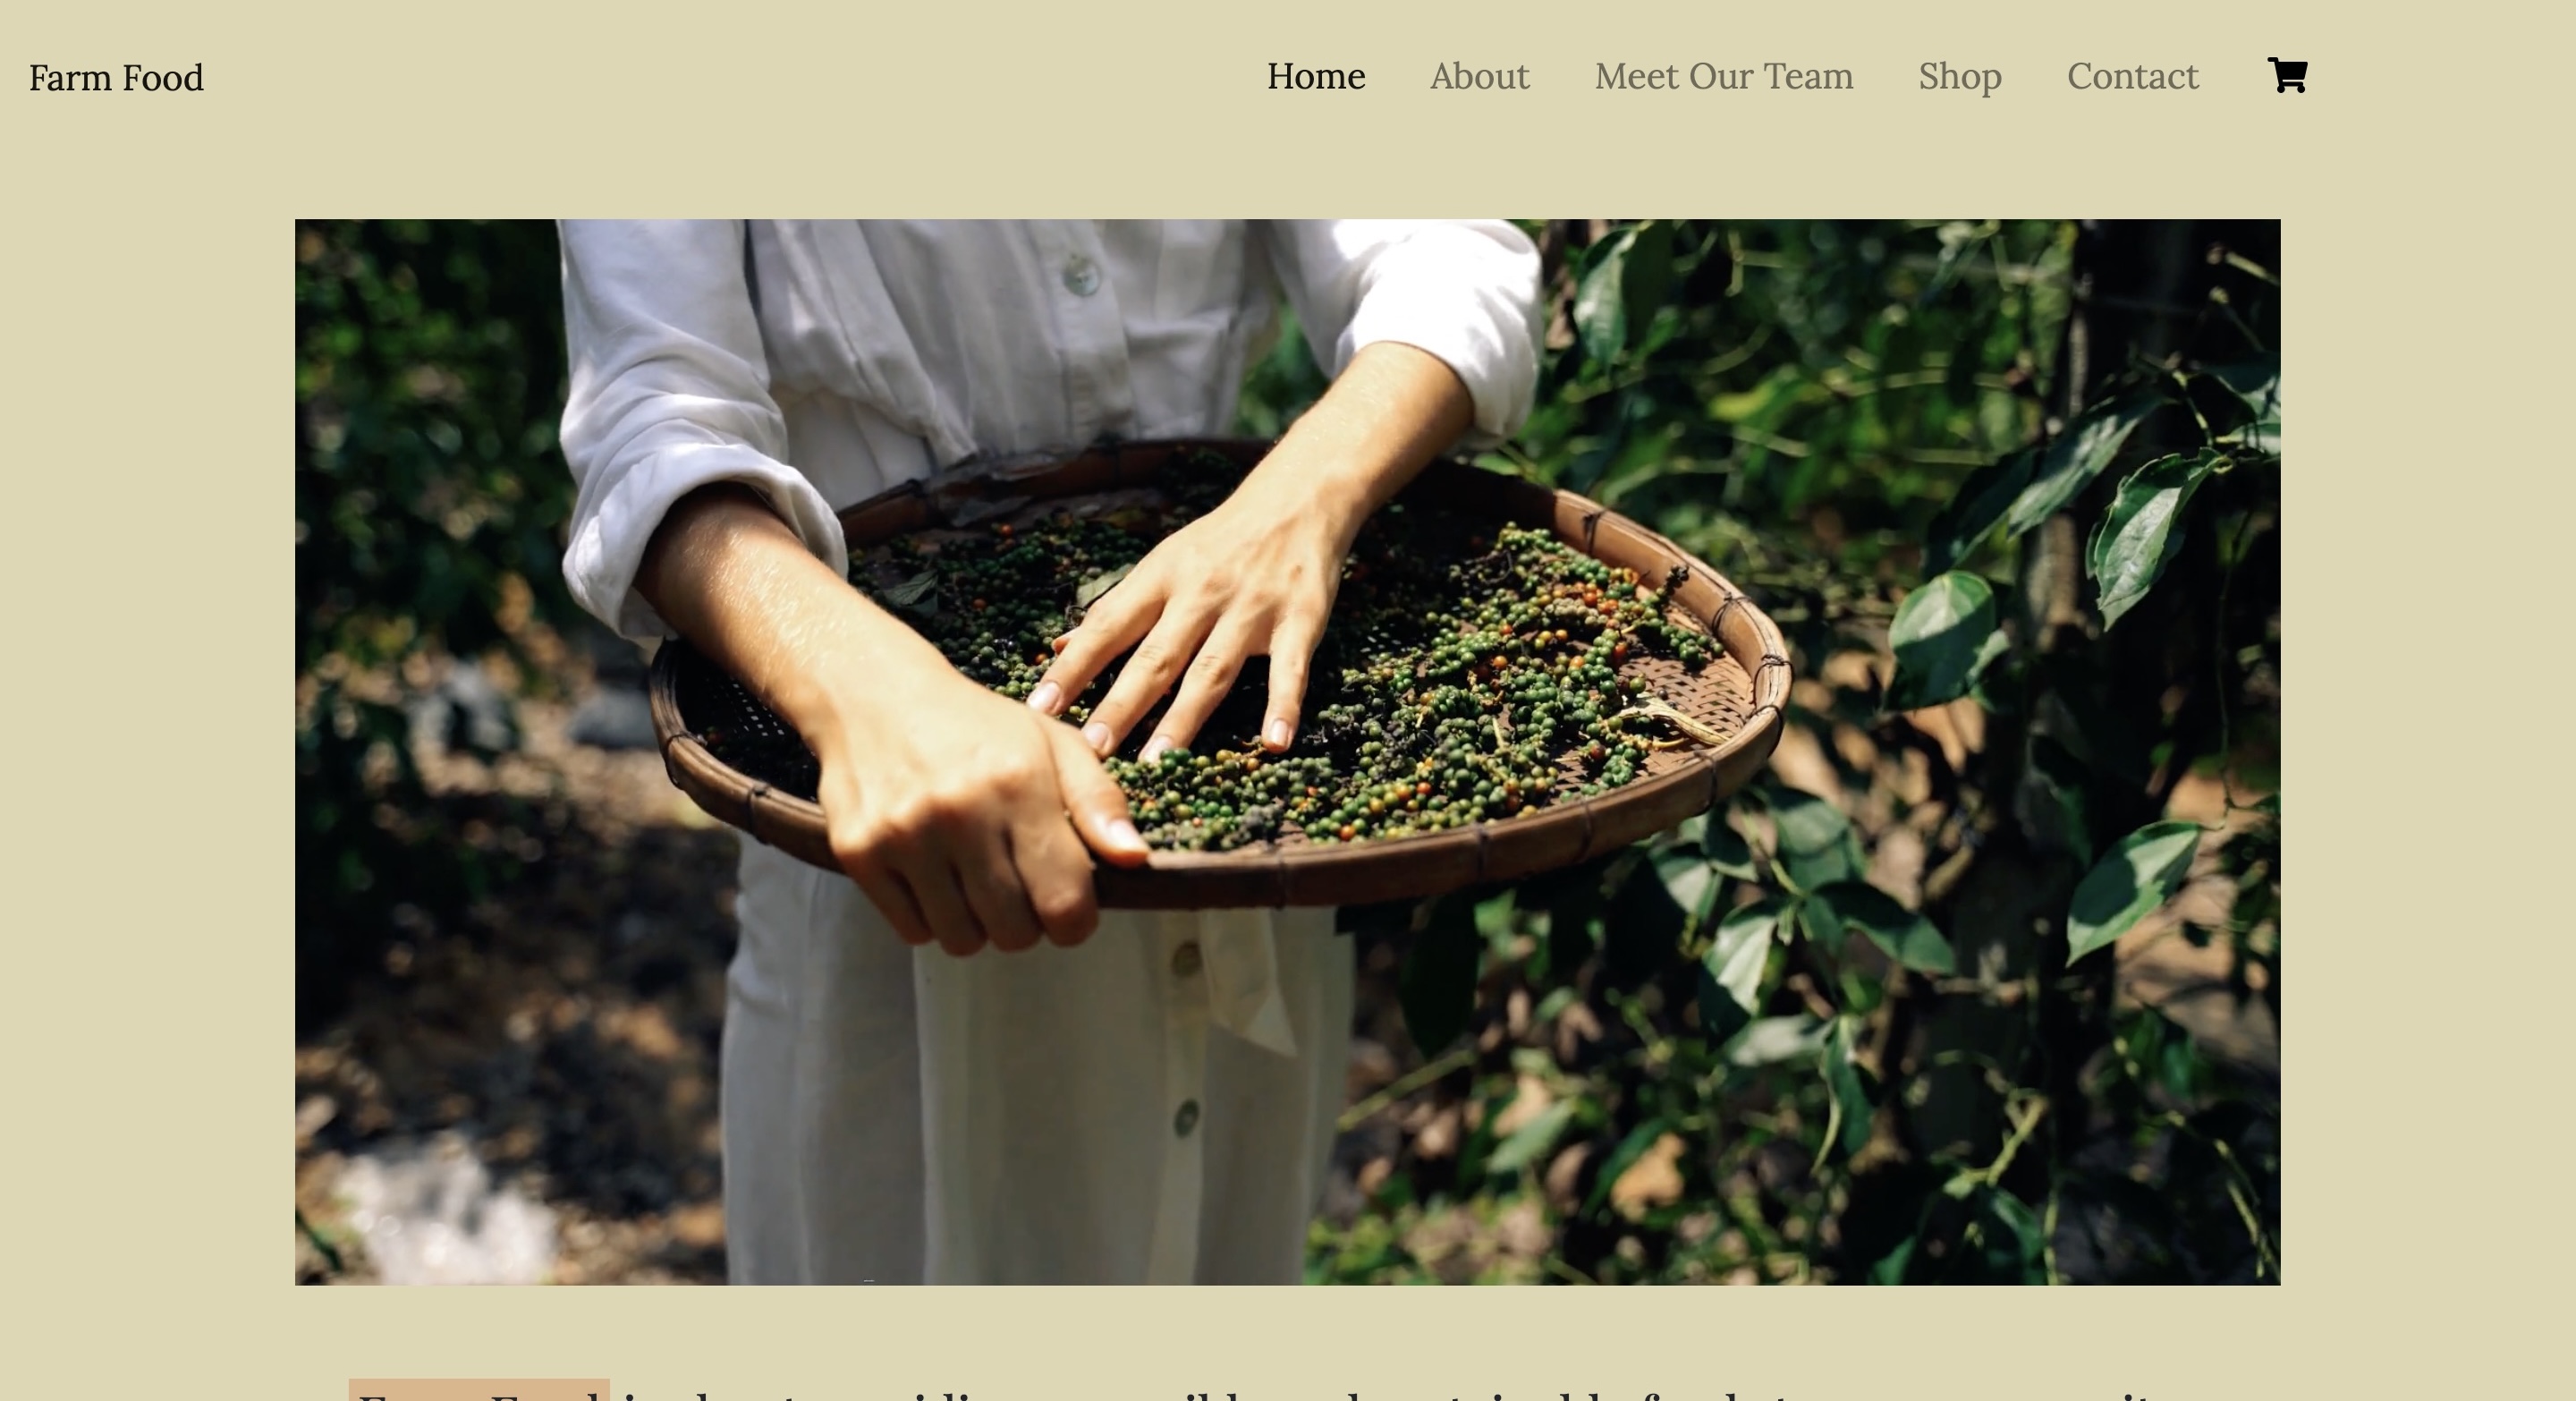 Farm Food Website Image 1